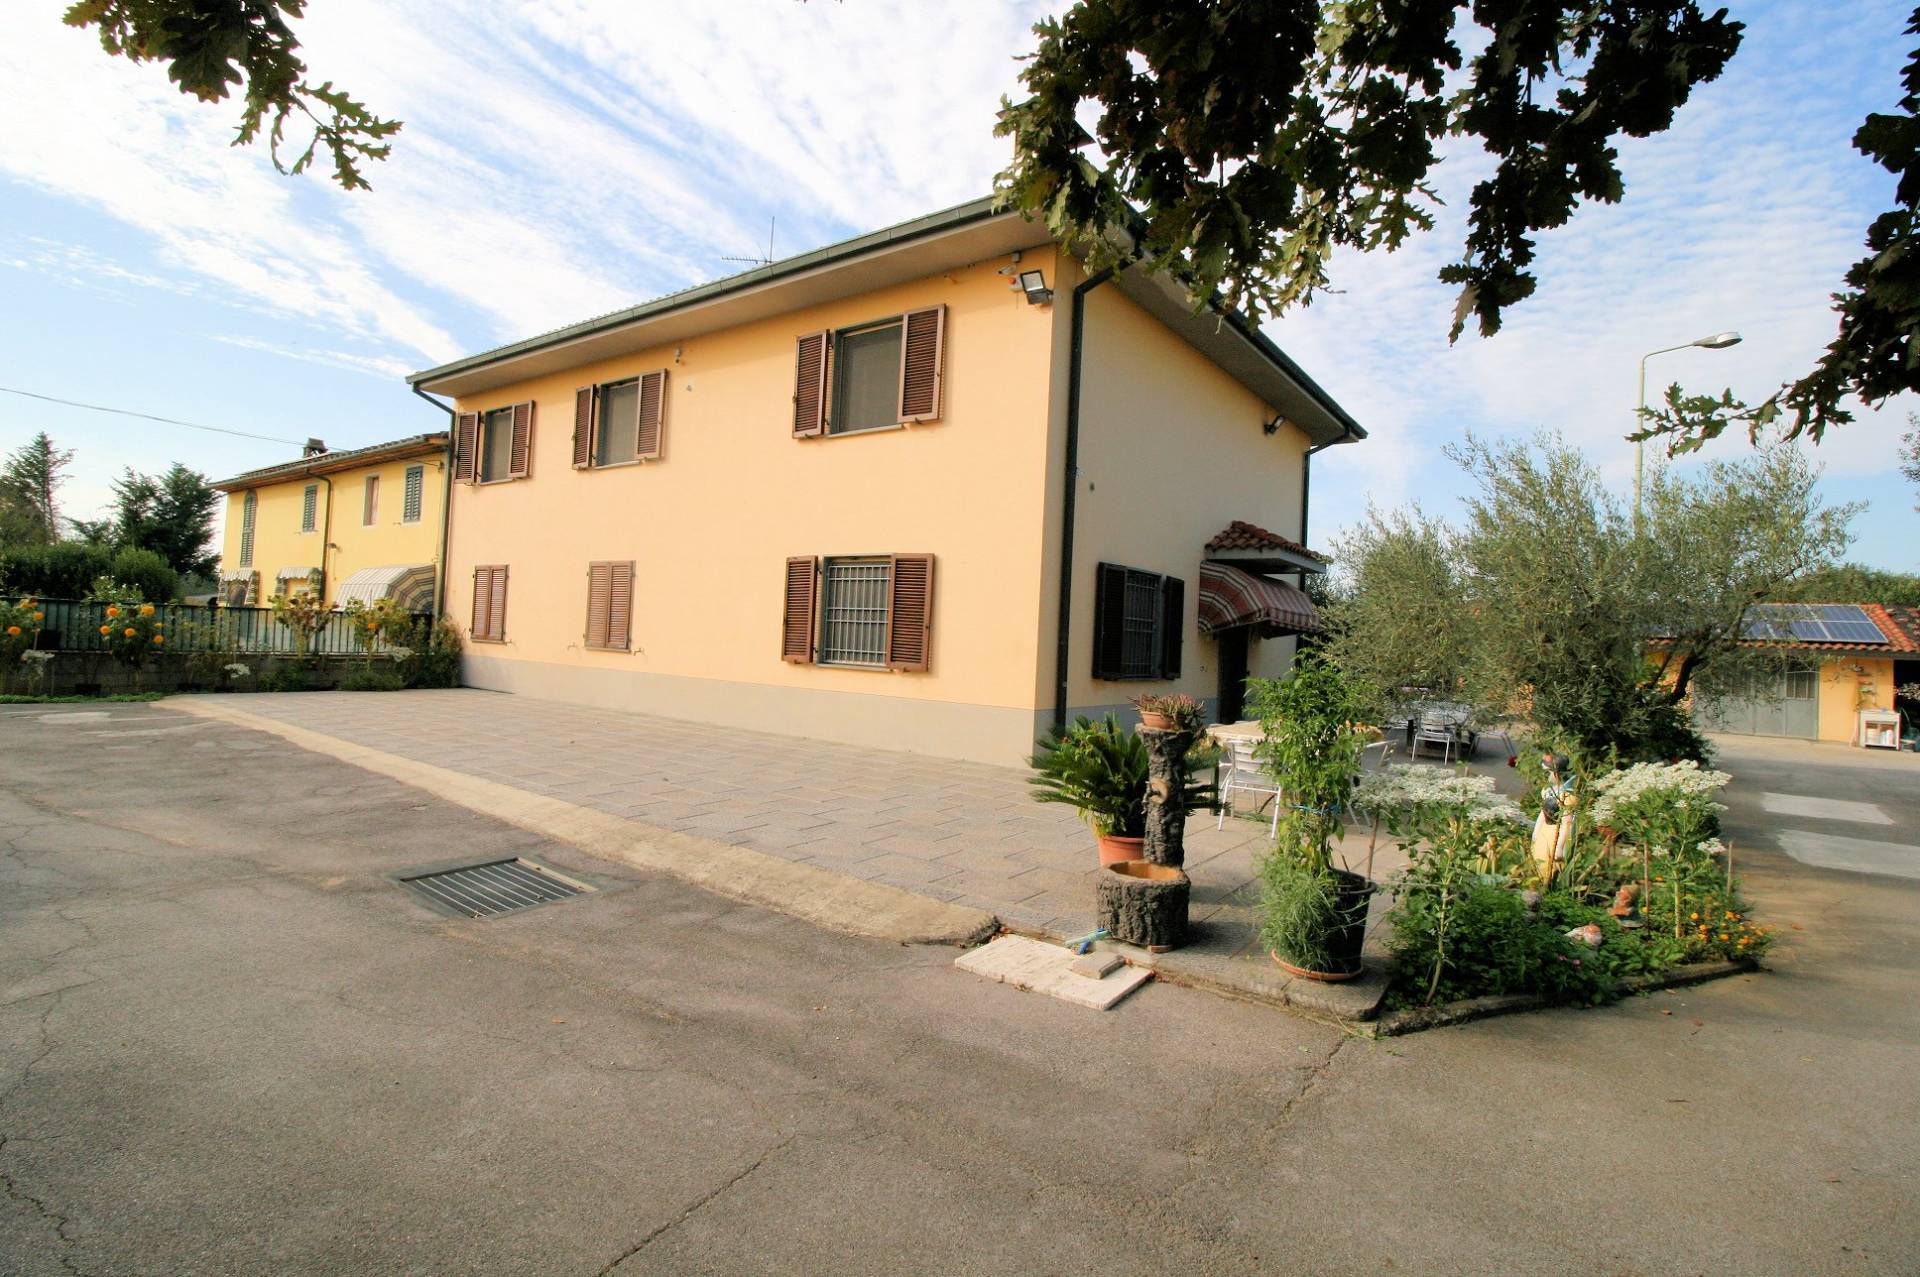 1479-Villetta bifamiliare con due appartamenti e ampio terreno-Altopascio-1 Agenzia Immobiliare ASIP